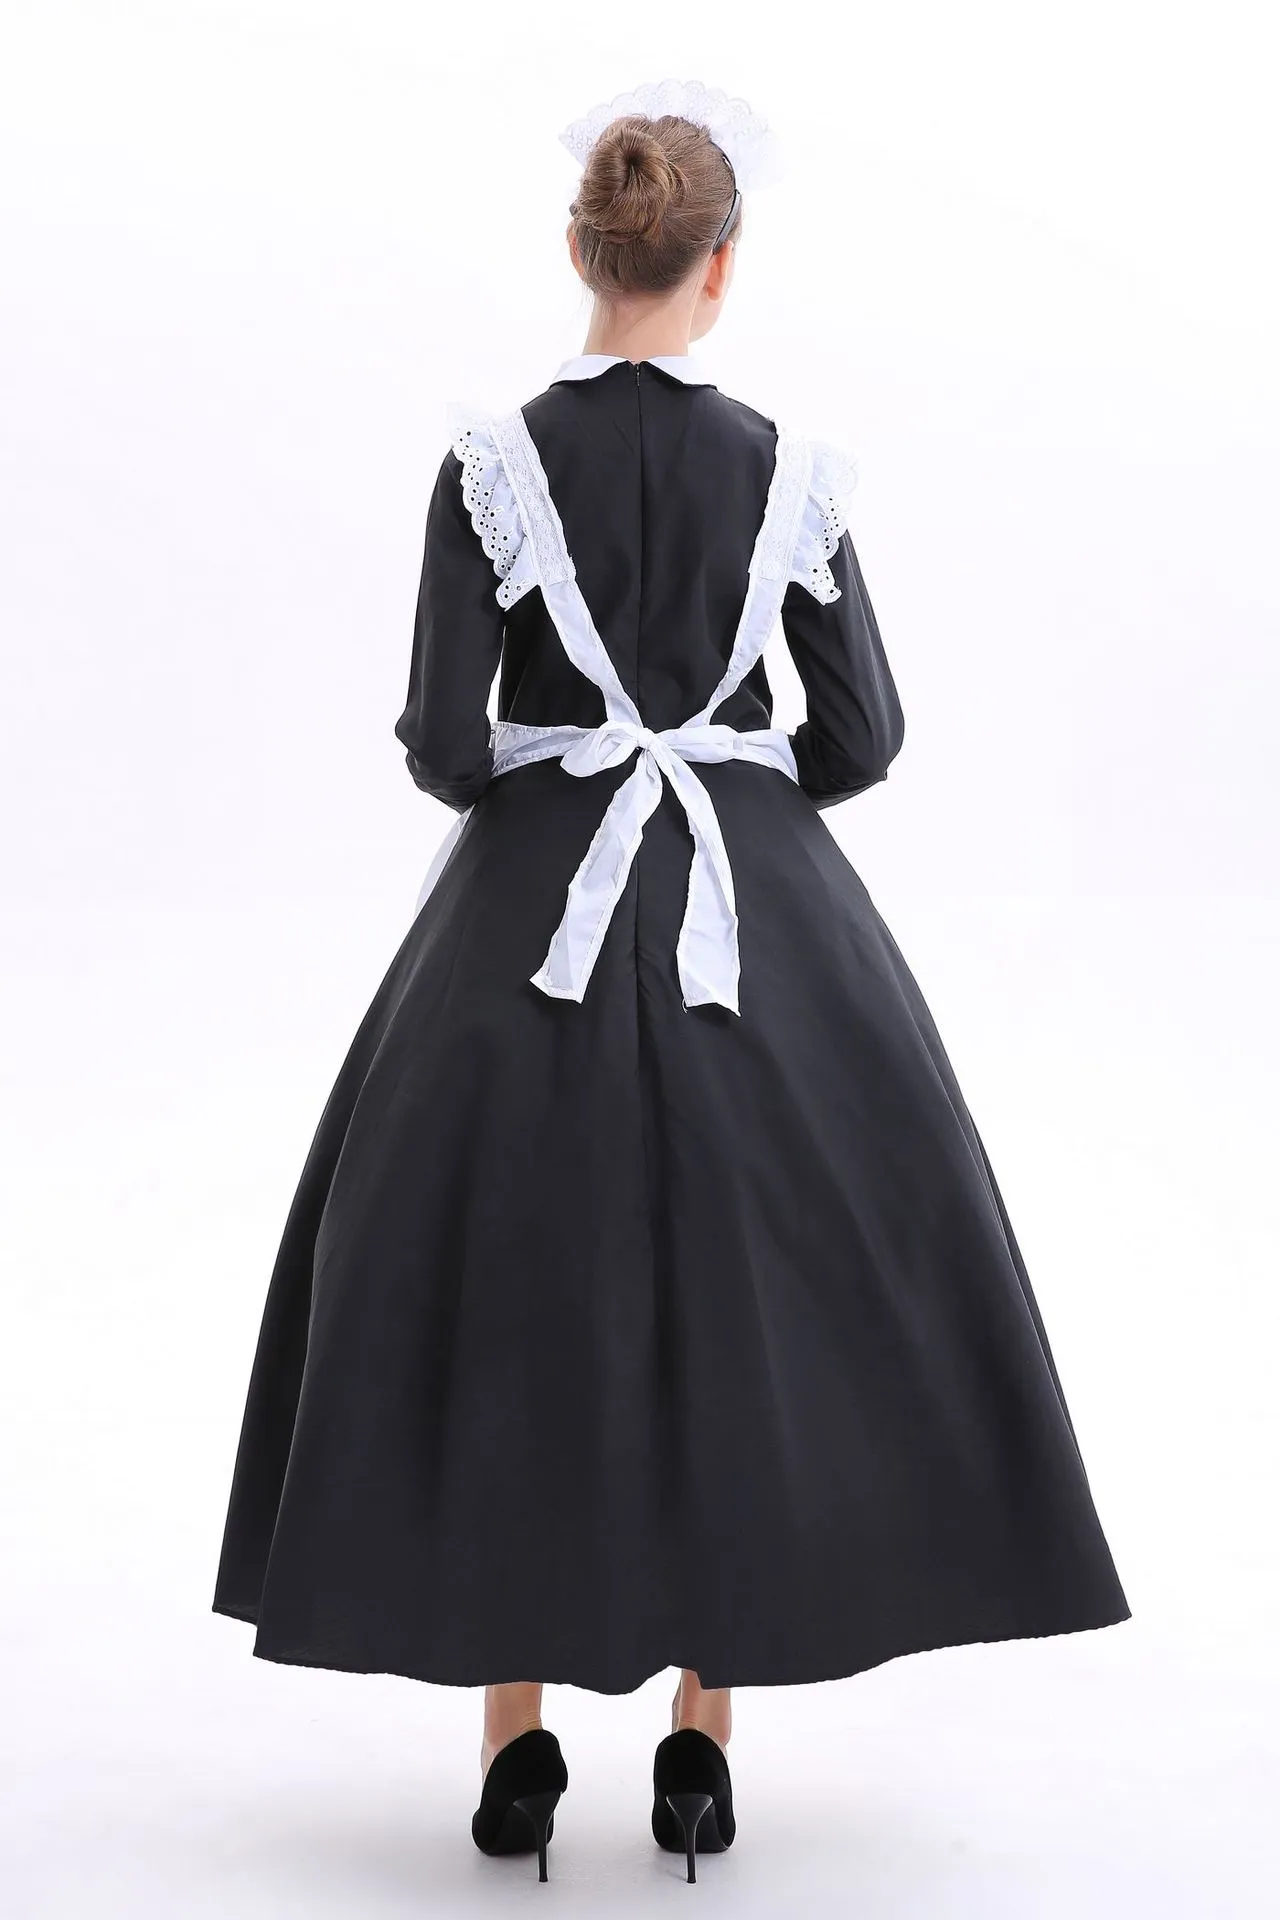 Disfraz de sirvienta francesa para cosplay, disfraz de sirvienta victoriana para adultos, sirvienta campesina pobre, disfraz de sirvienta francesa 255h